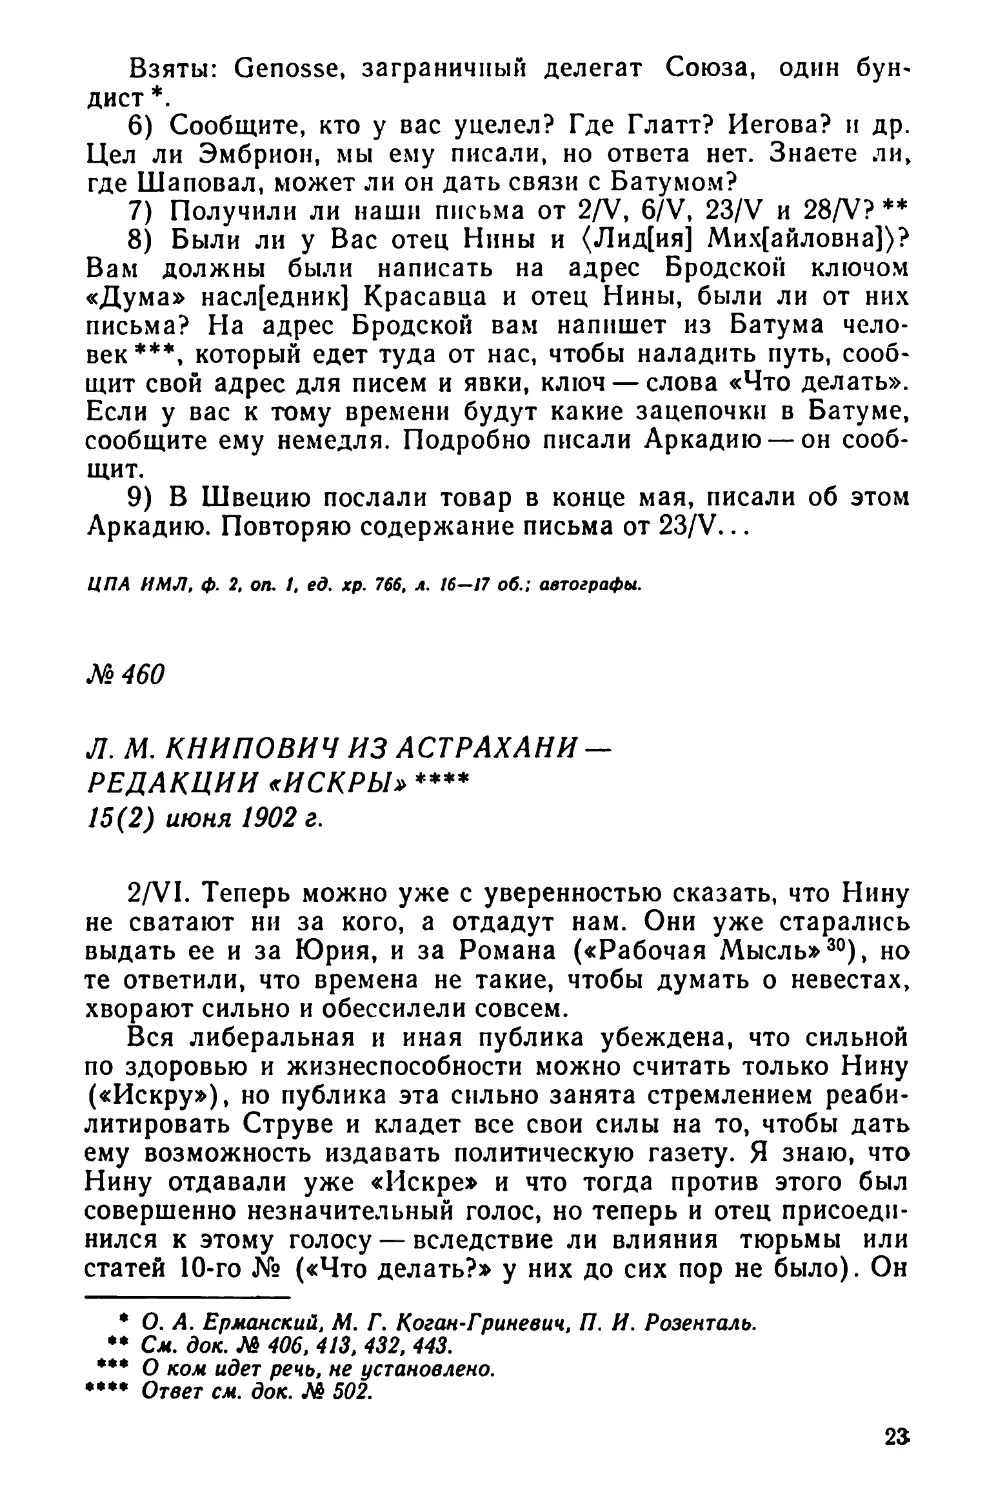 № 460 Л. М. Книпович из Астрахани — редакции «Искры». 15 июня